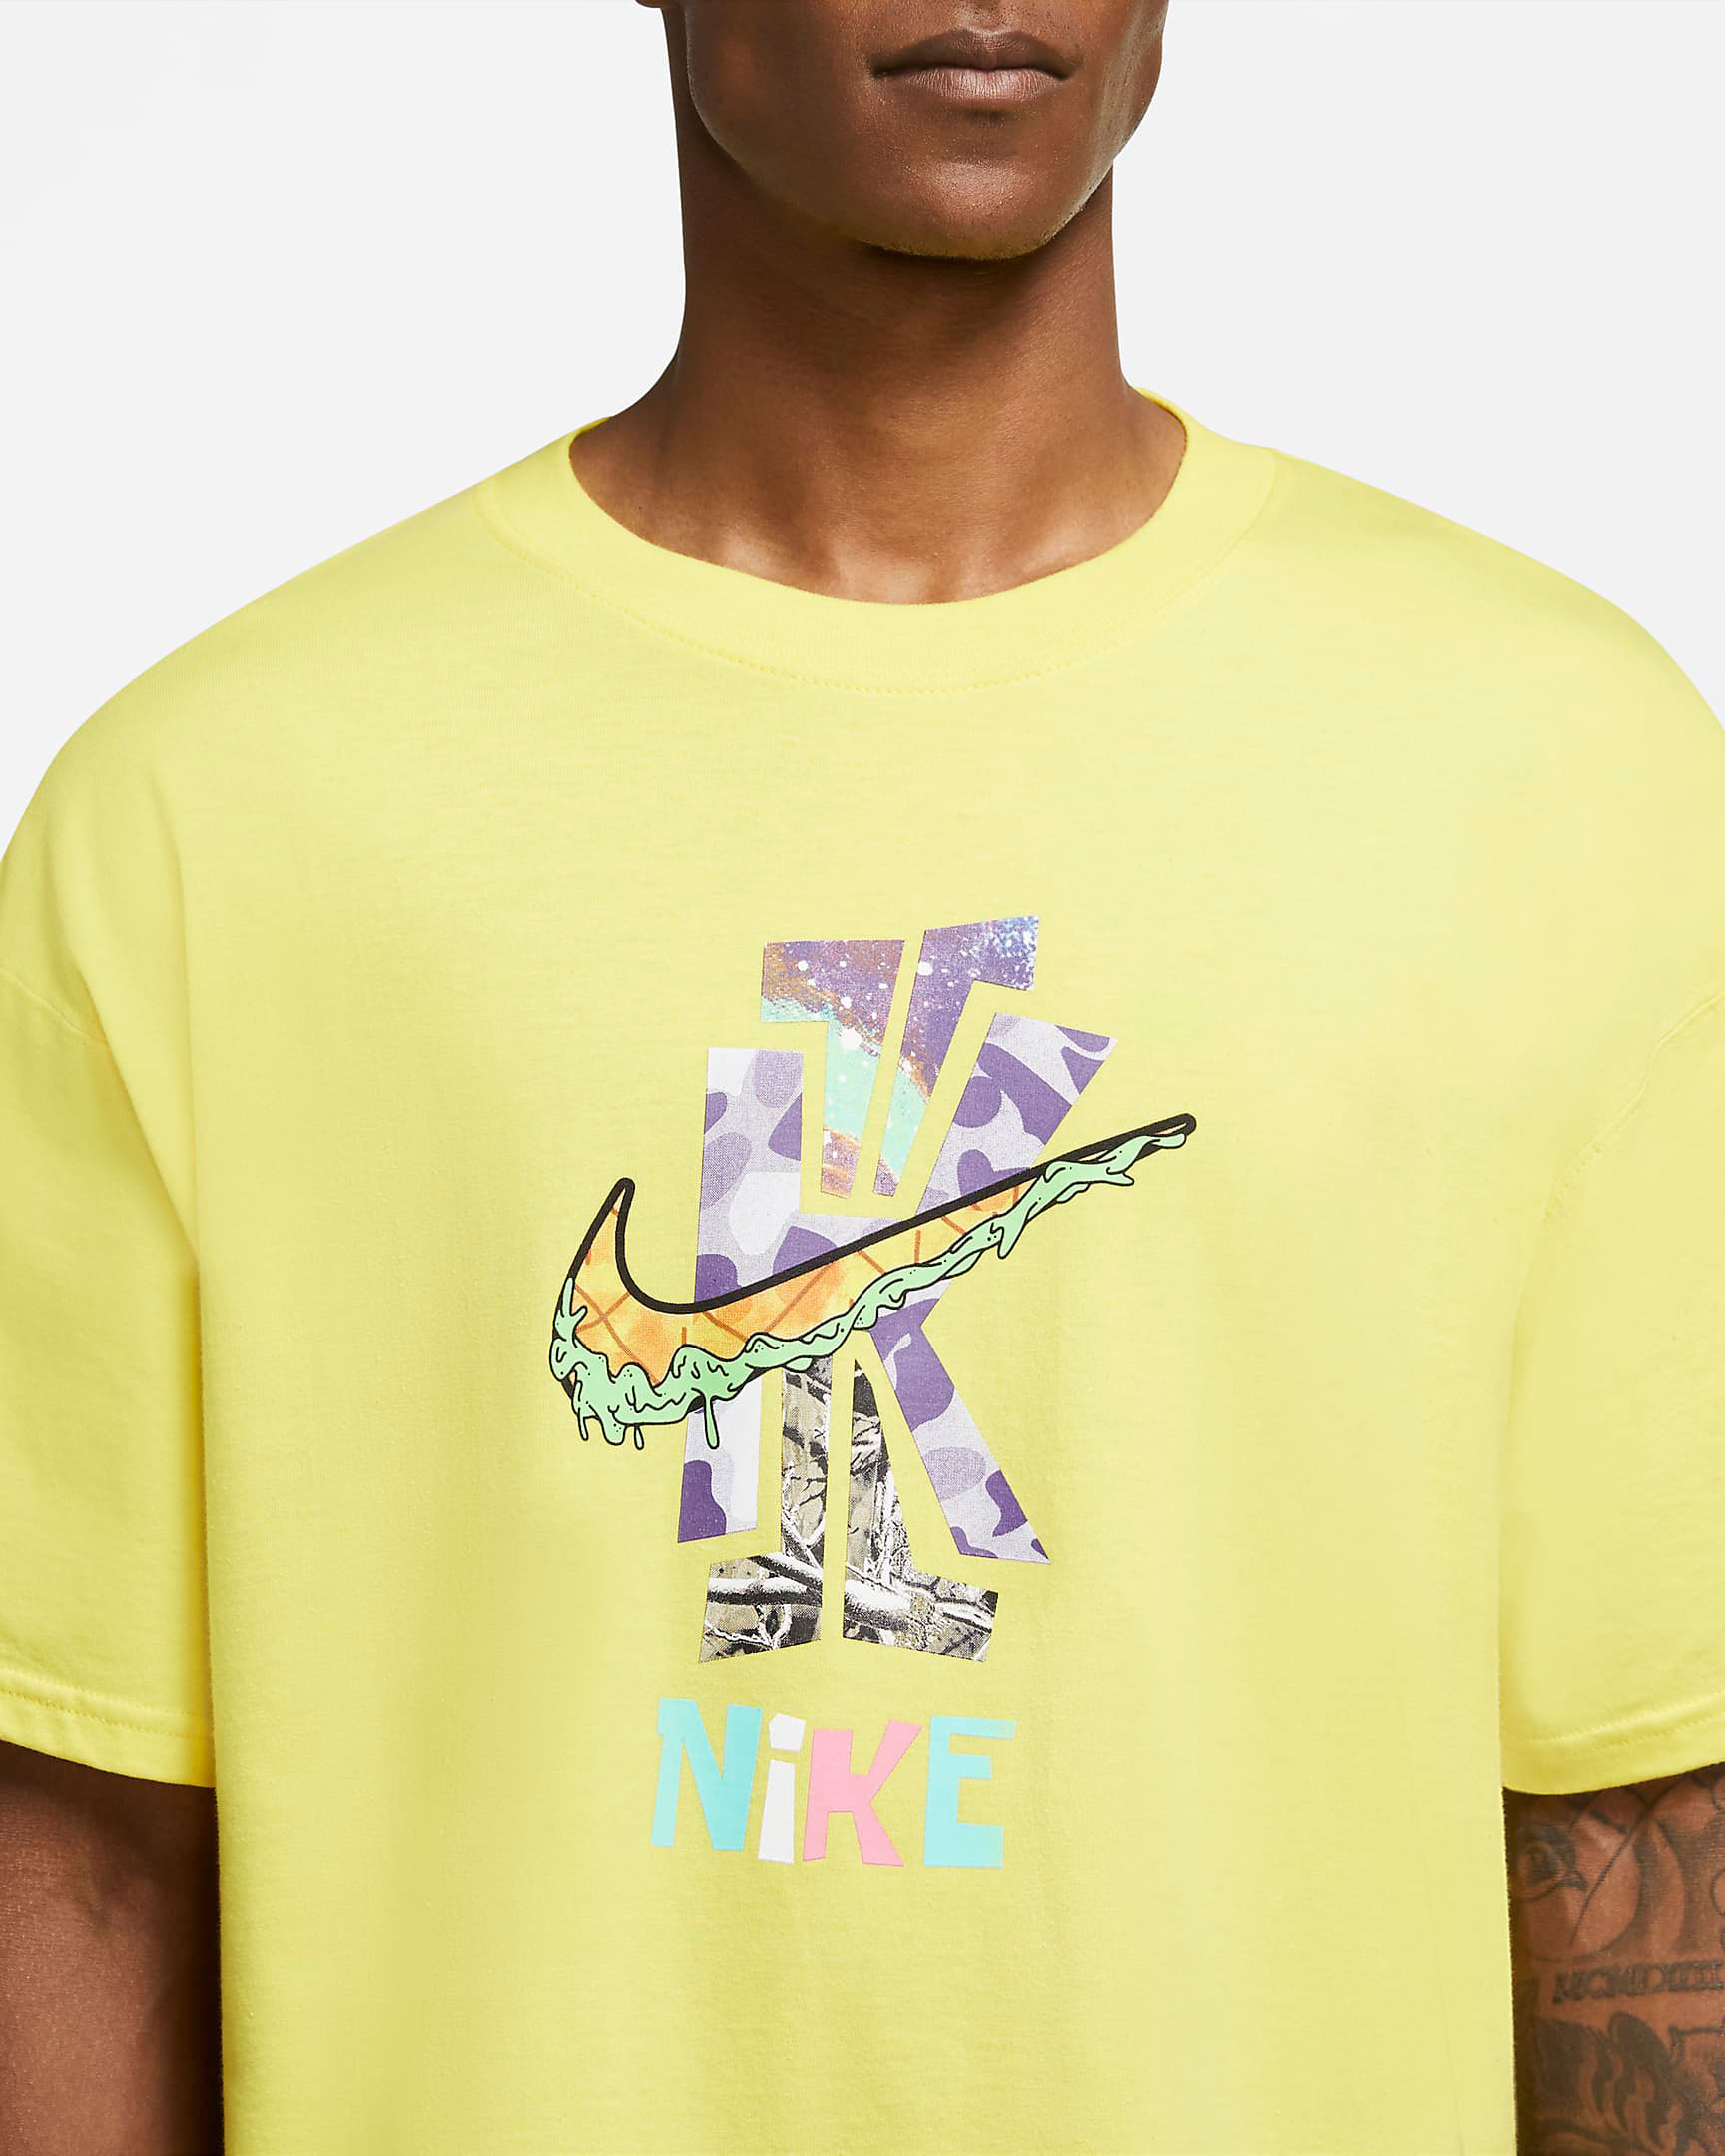 nike-kybrid-s2-pineapple-shirt-3